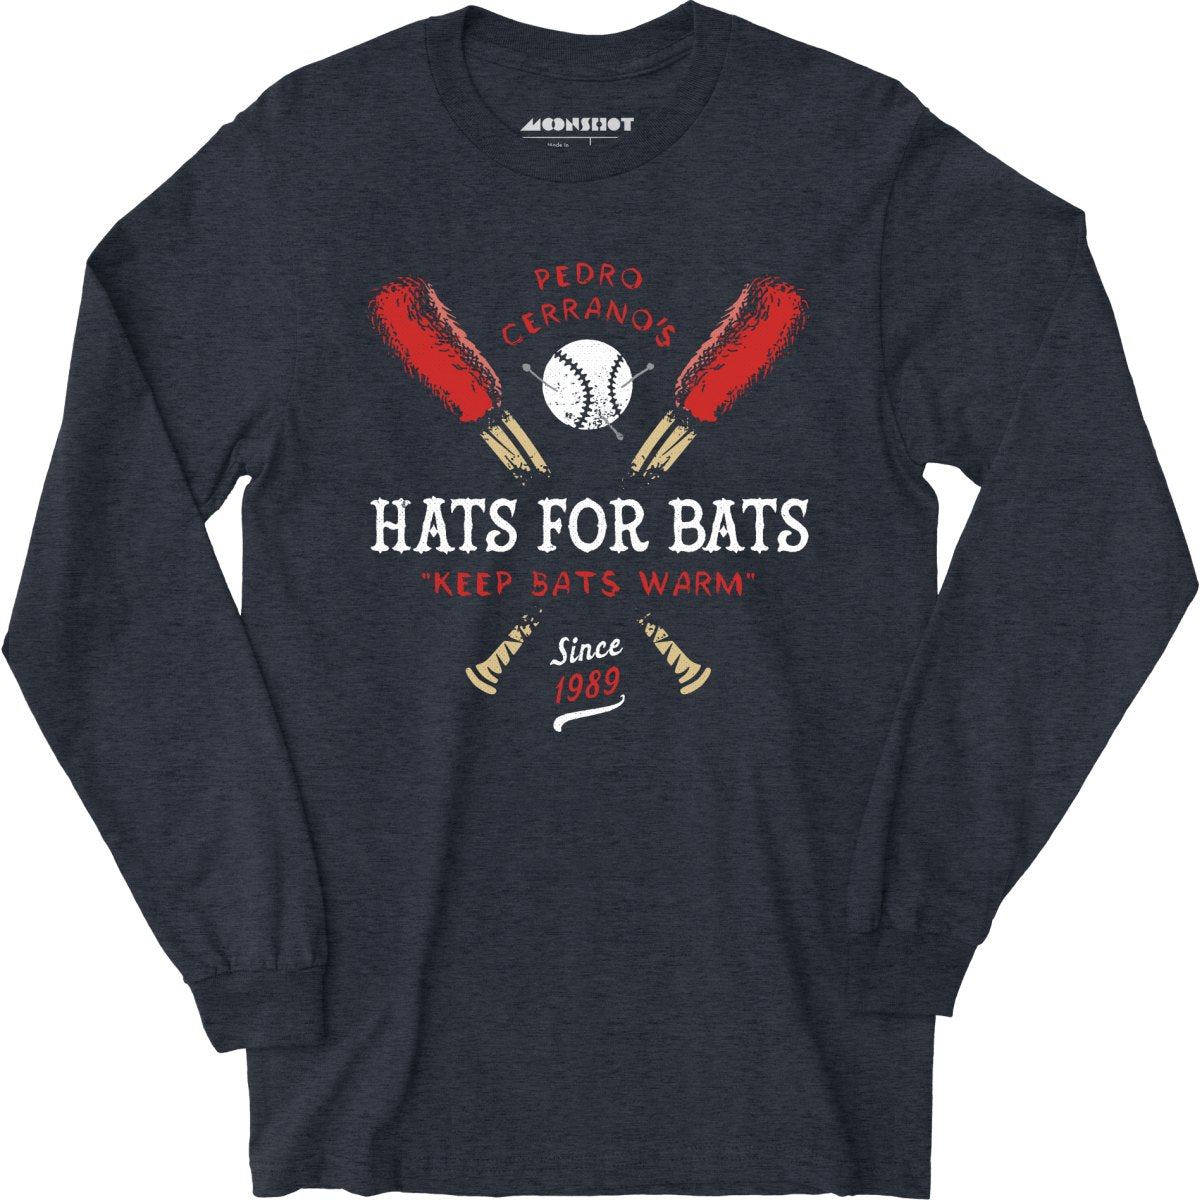 Pedro Cerrano's Hats for Bats - Long Sleeve T-Shirt